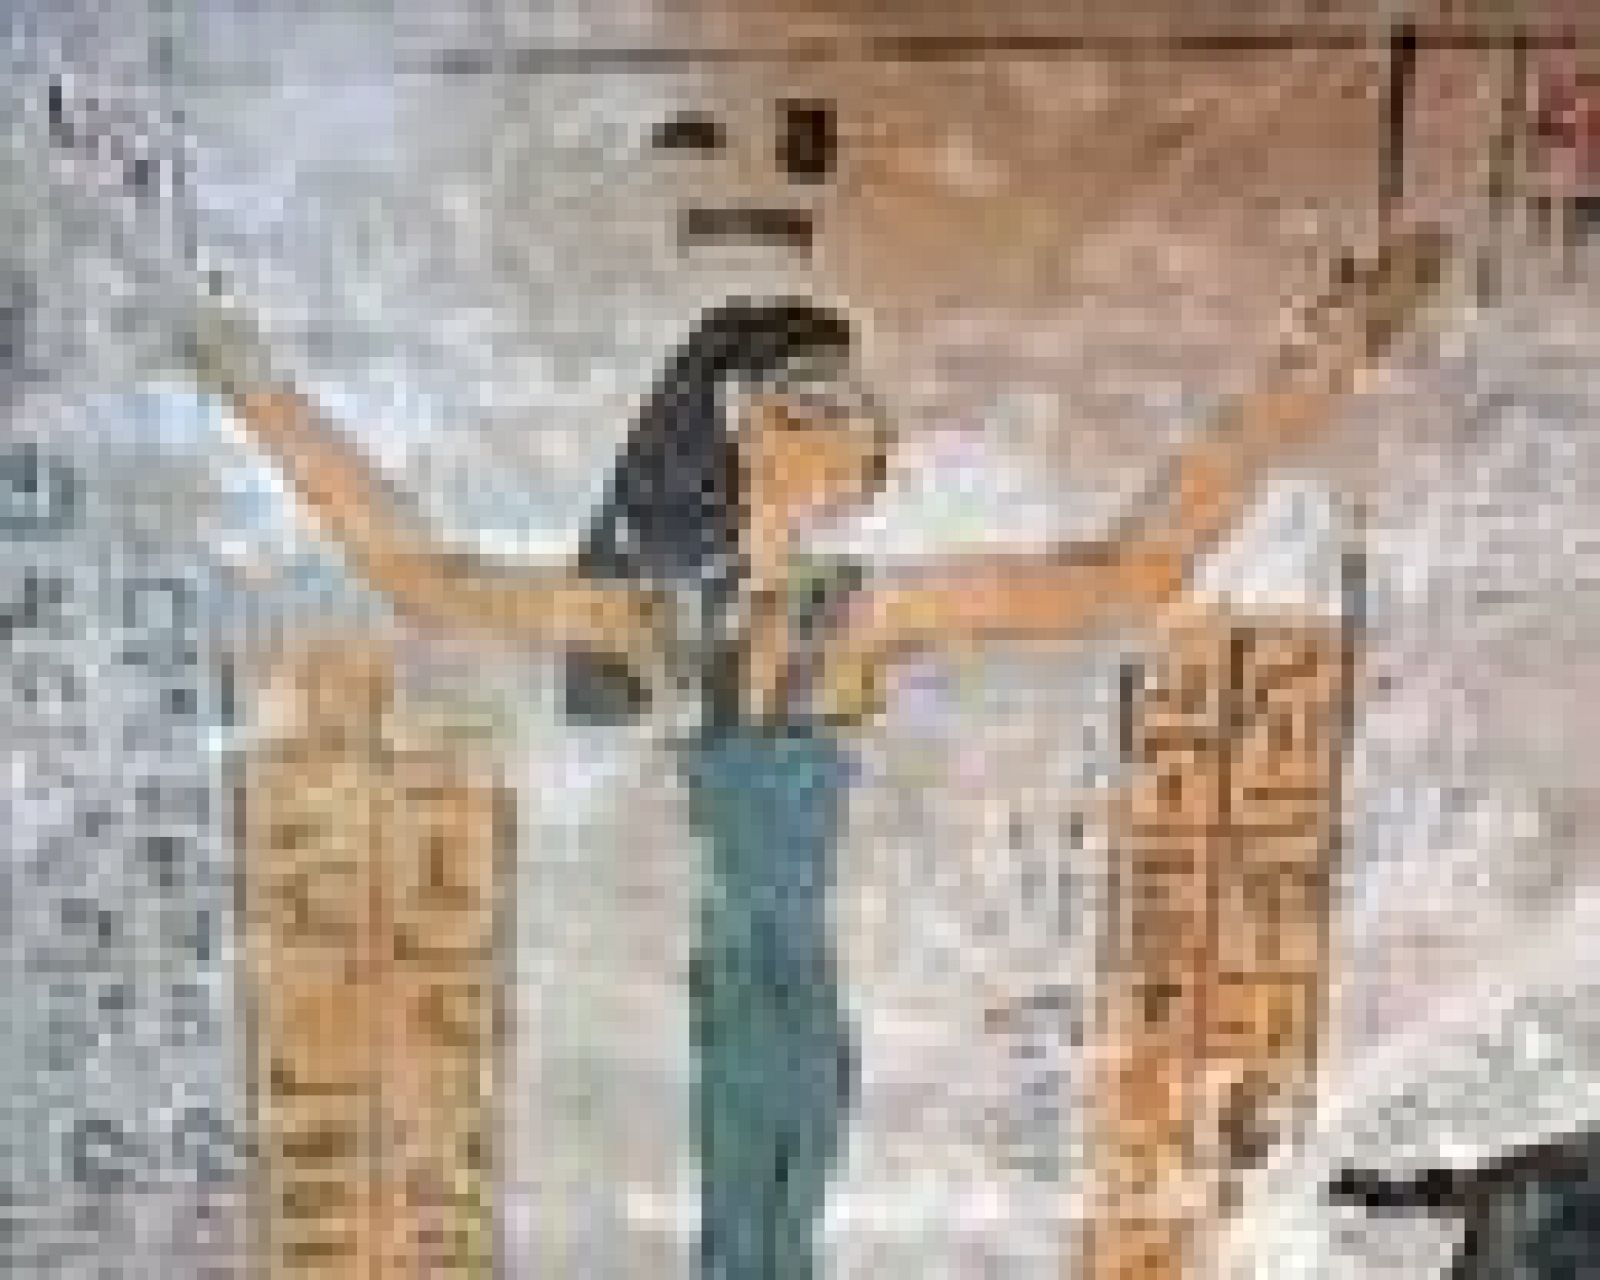  Arqueólogos españoles han descubierto una auténtica 'Capilla Sixtina' de 3.500 años de antigüedad en la tumba del escriba Djehuty, en Egipto. 